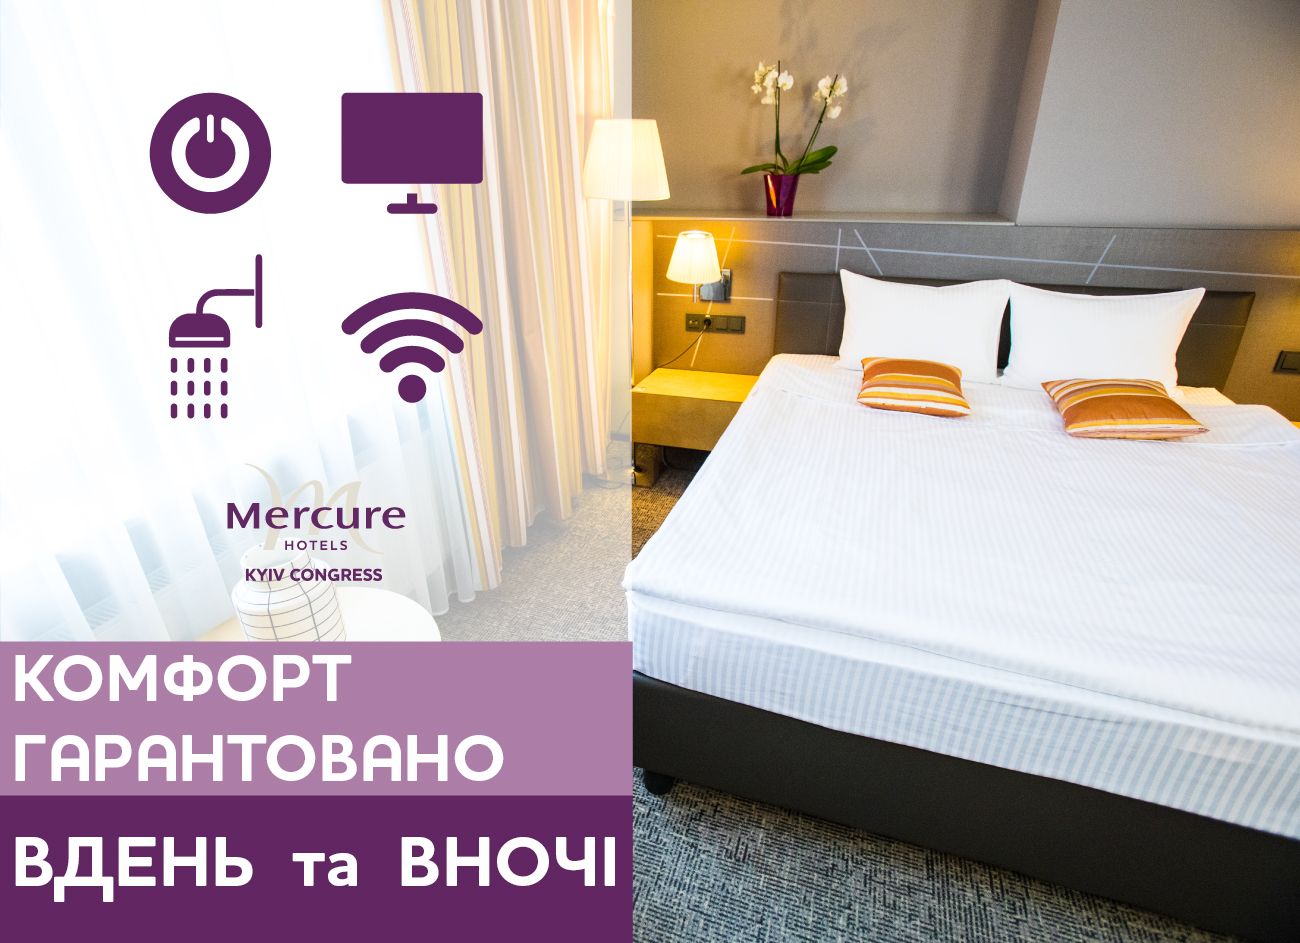 Комфорт та безпека у готелі Mercure Kyiv Congress - для наших гостей!